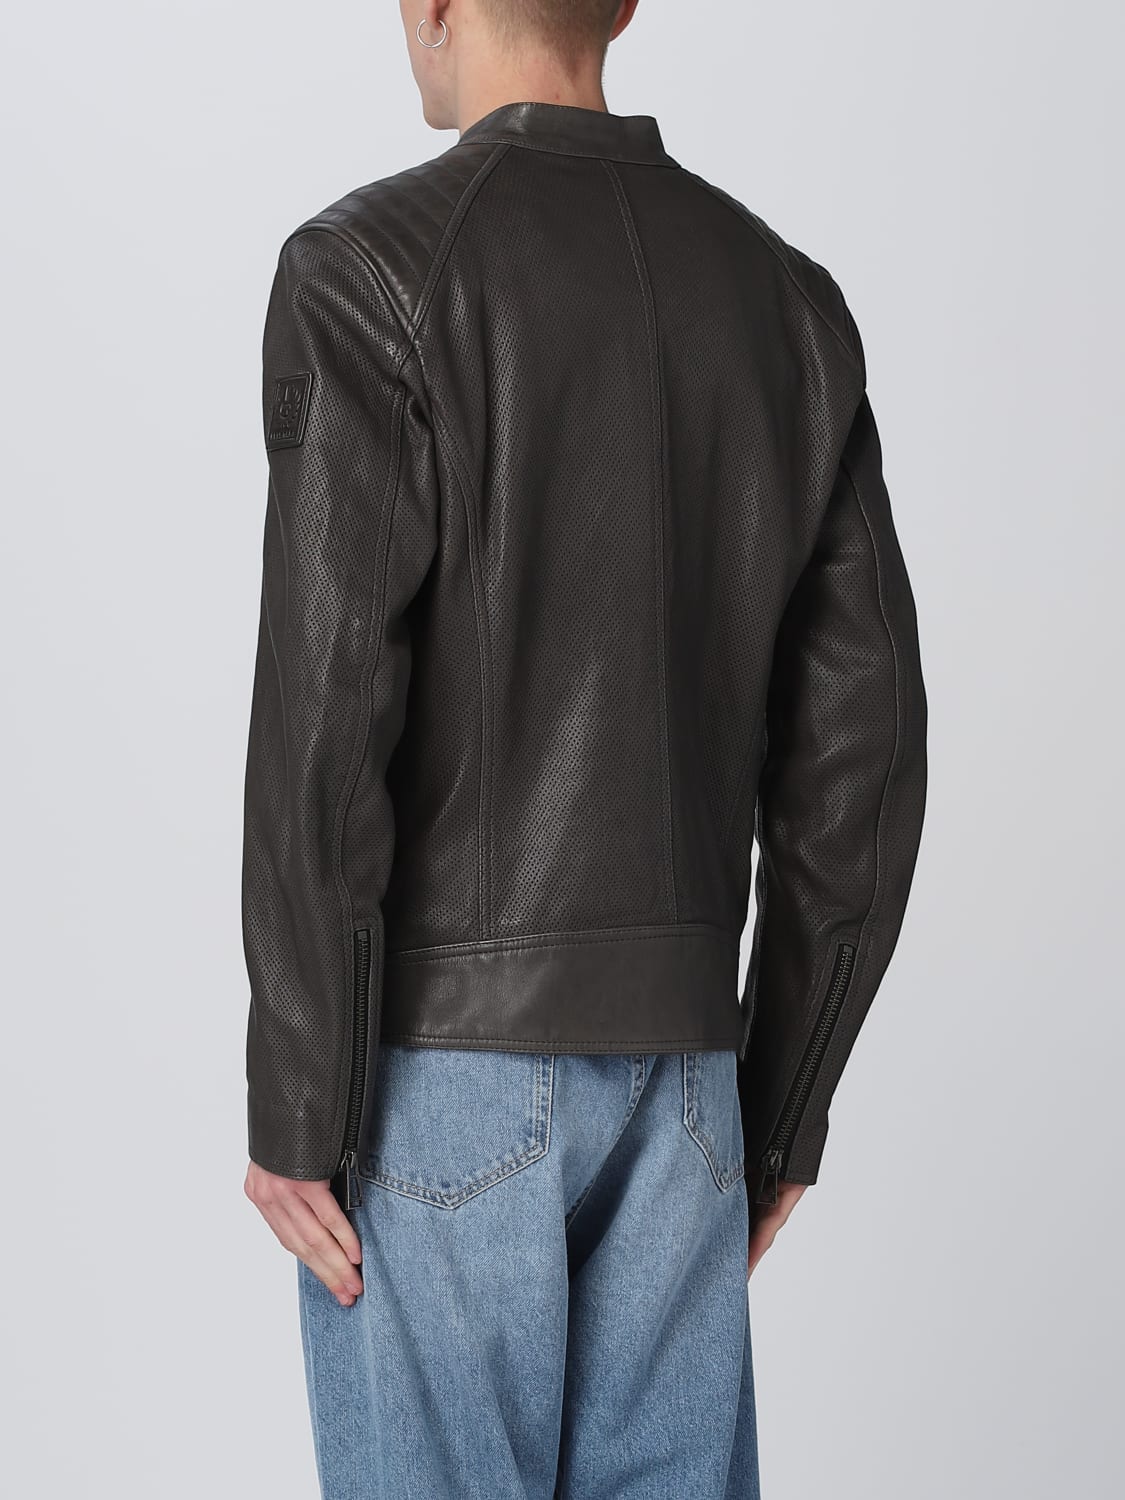 Belstaff Outlet: jacket for men - Grey  Belstaff jacket 103986 online at